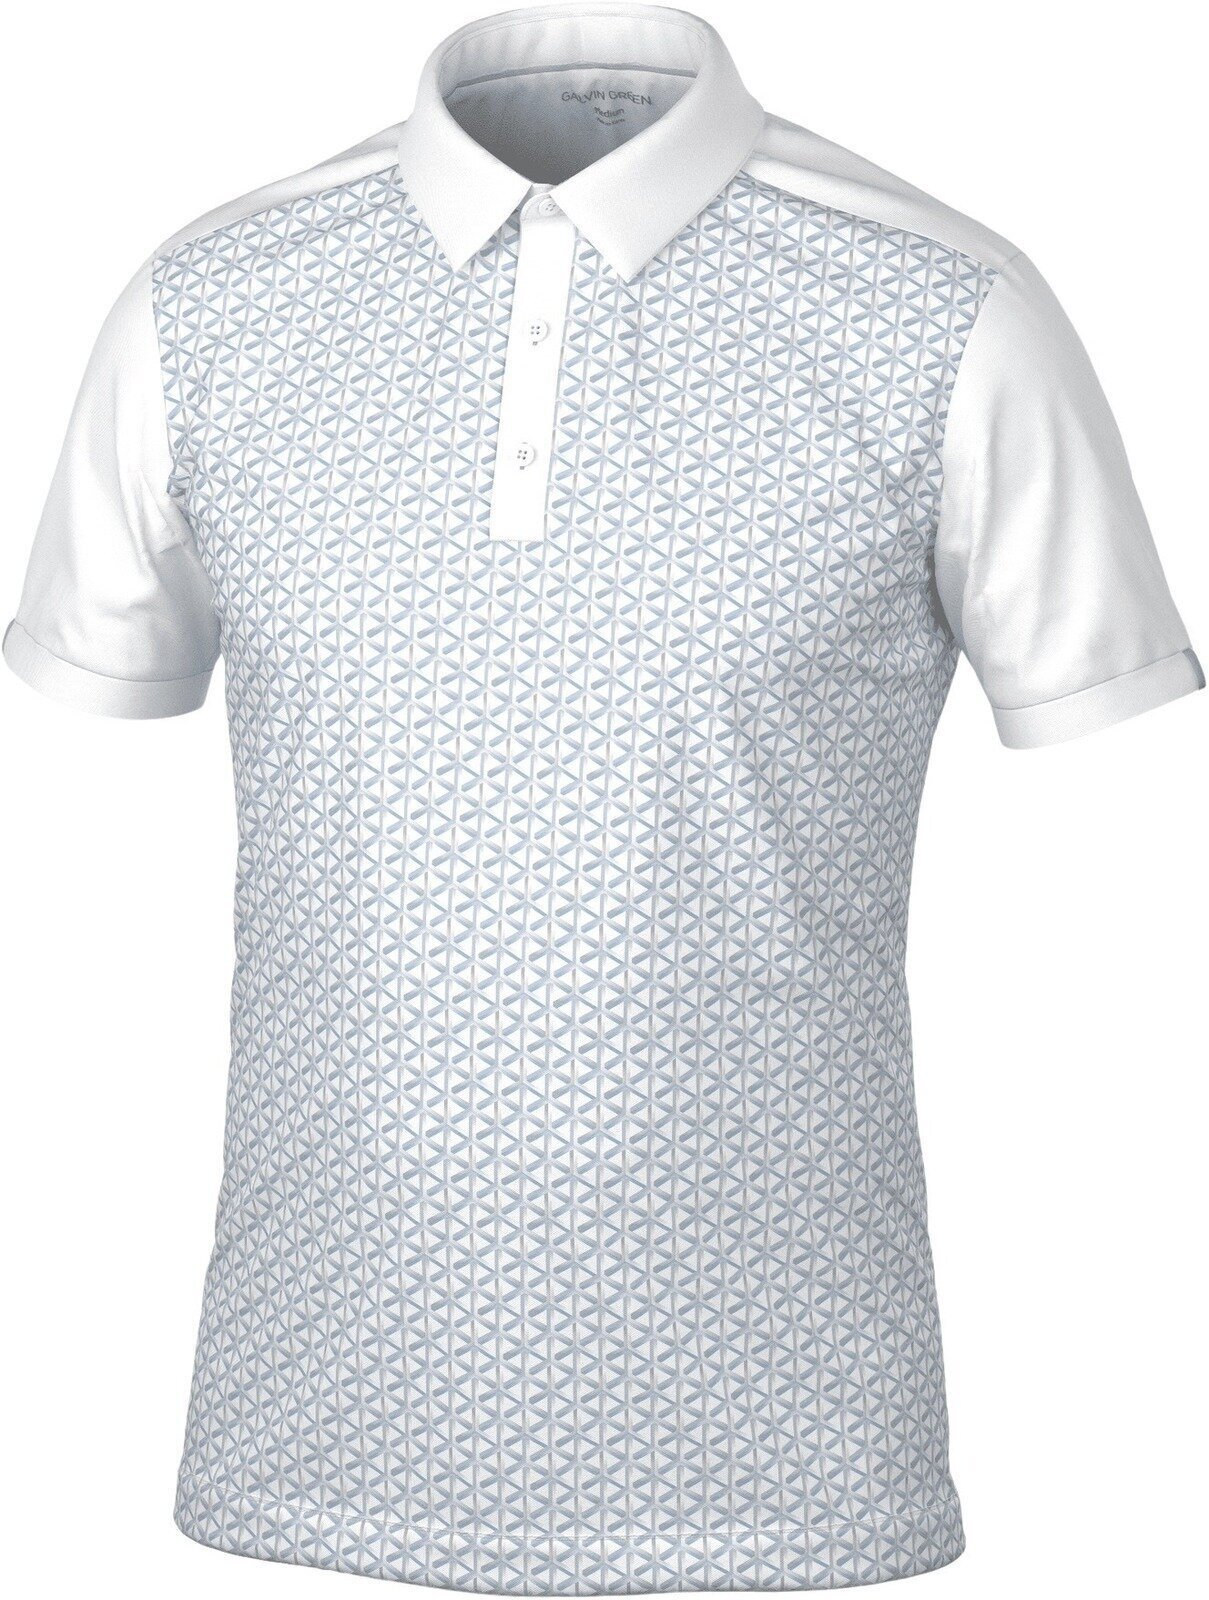 Риза за поло Galvin Green Mio Mens Polo Shirt Grey/White M Риза за поло